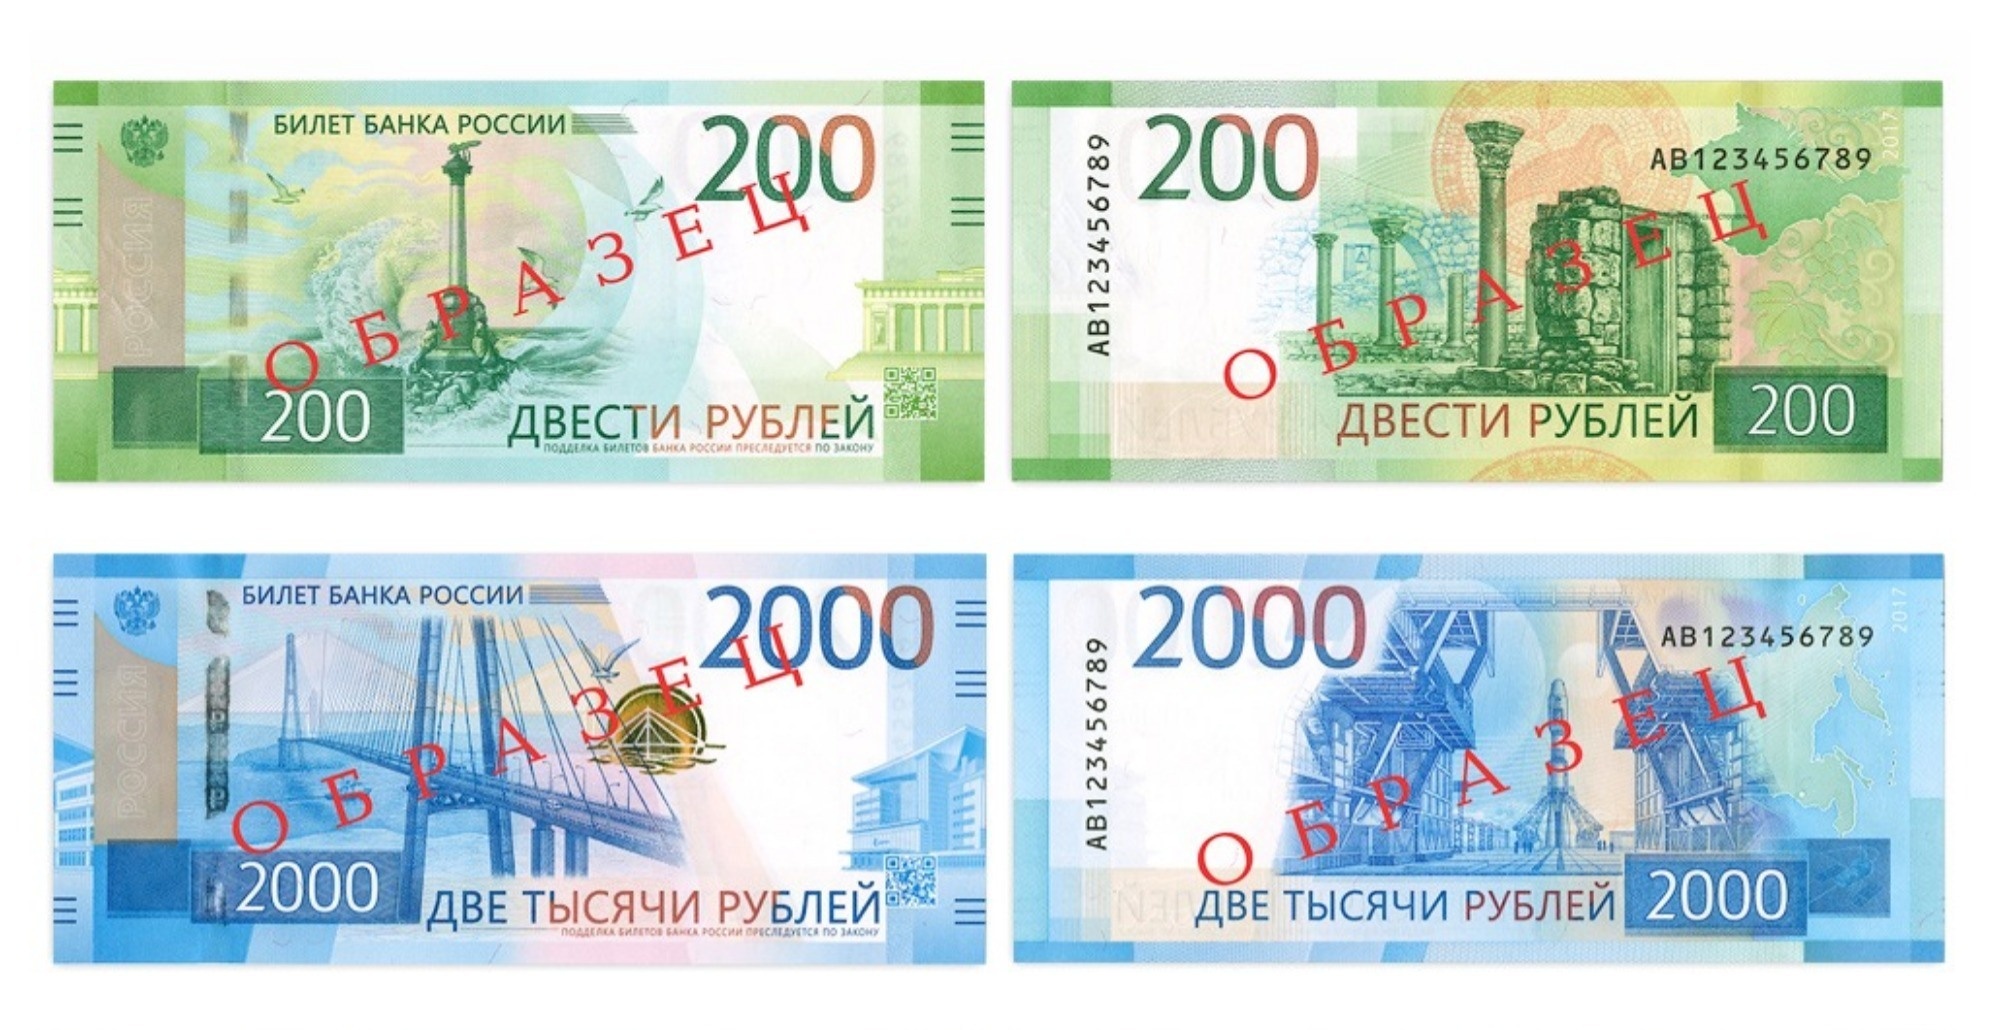 Новые купюры 200 и 2000 рублей похожи на евро